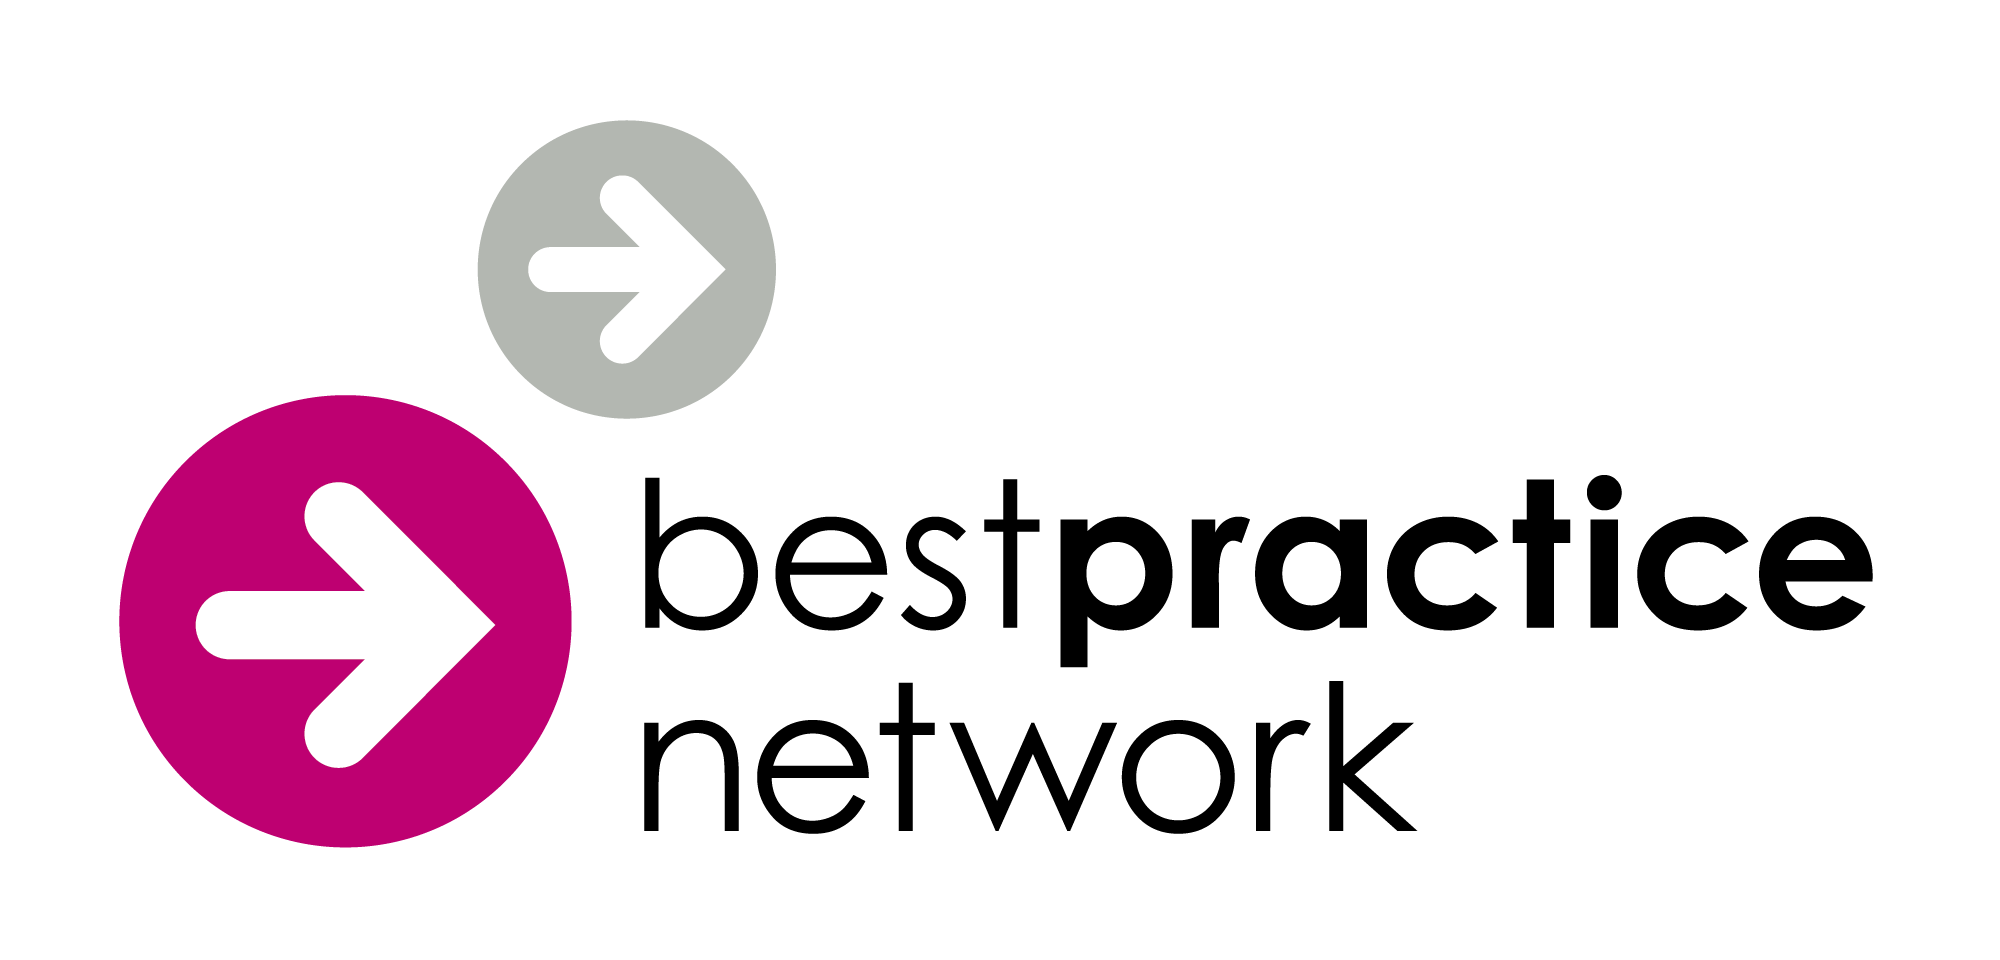 Best practice network logo